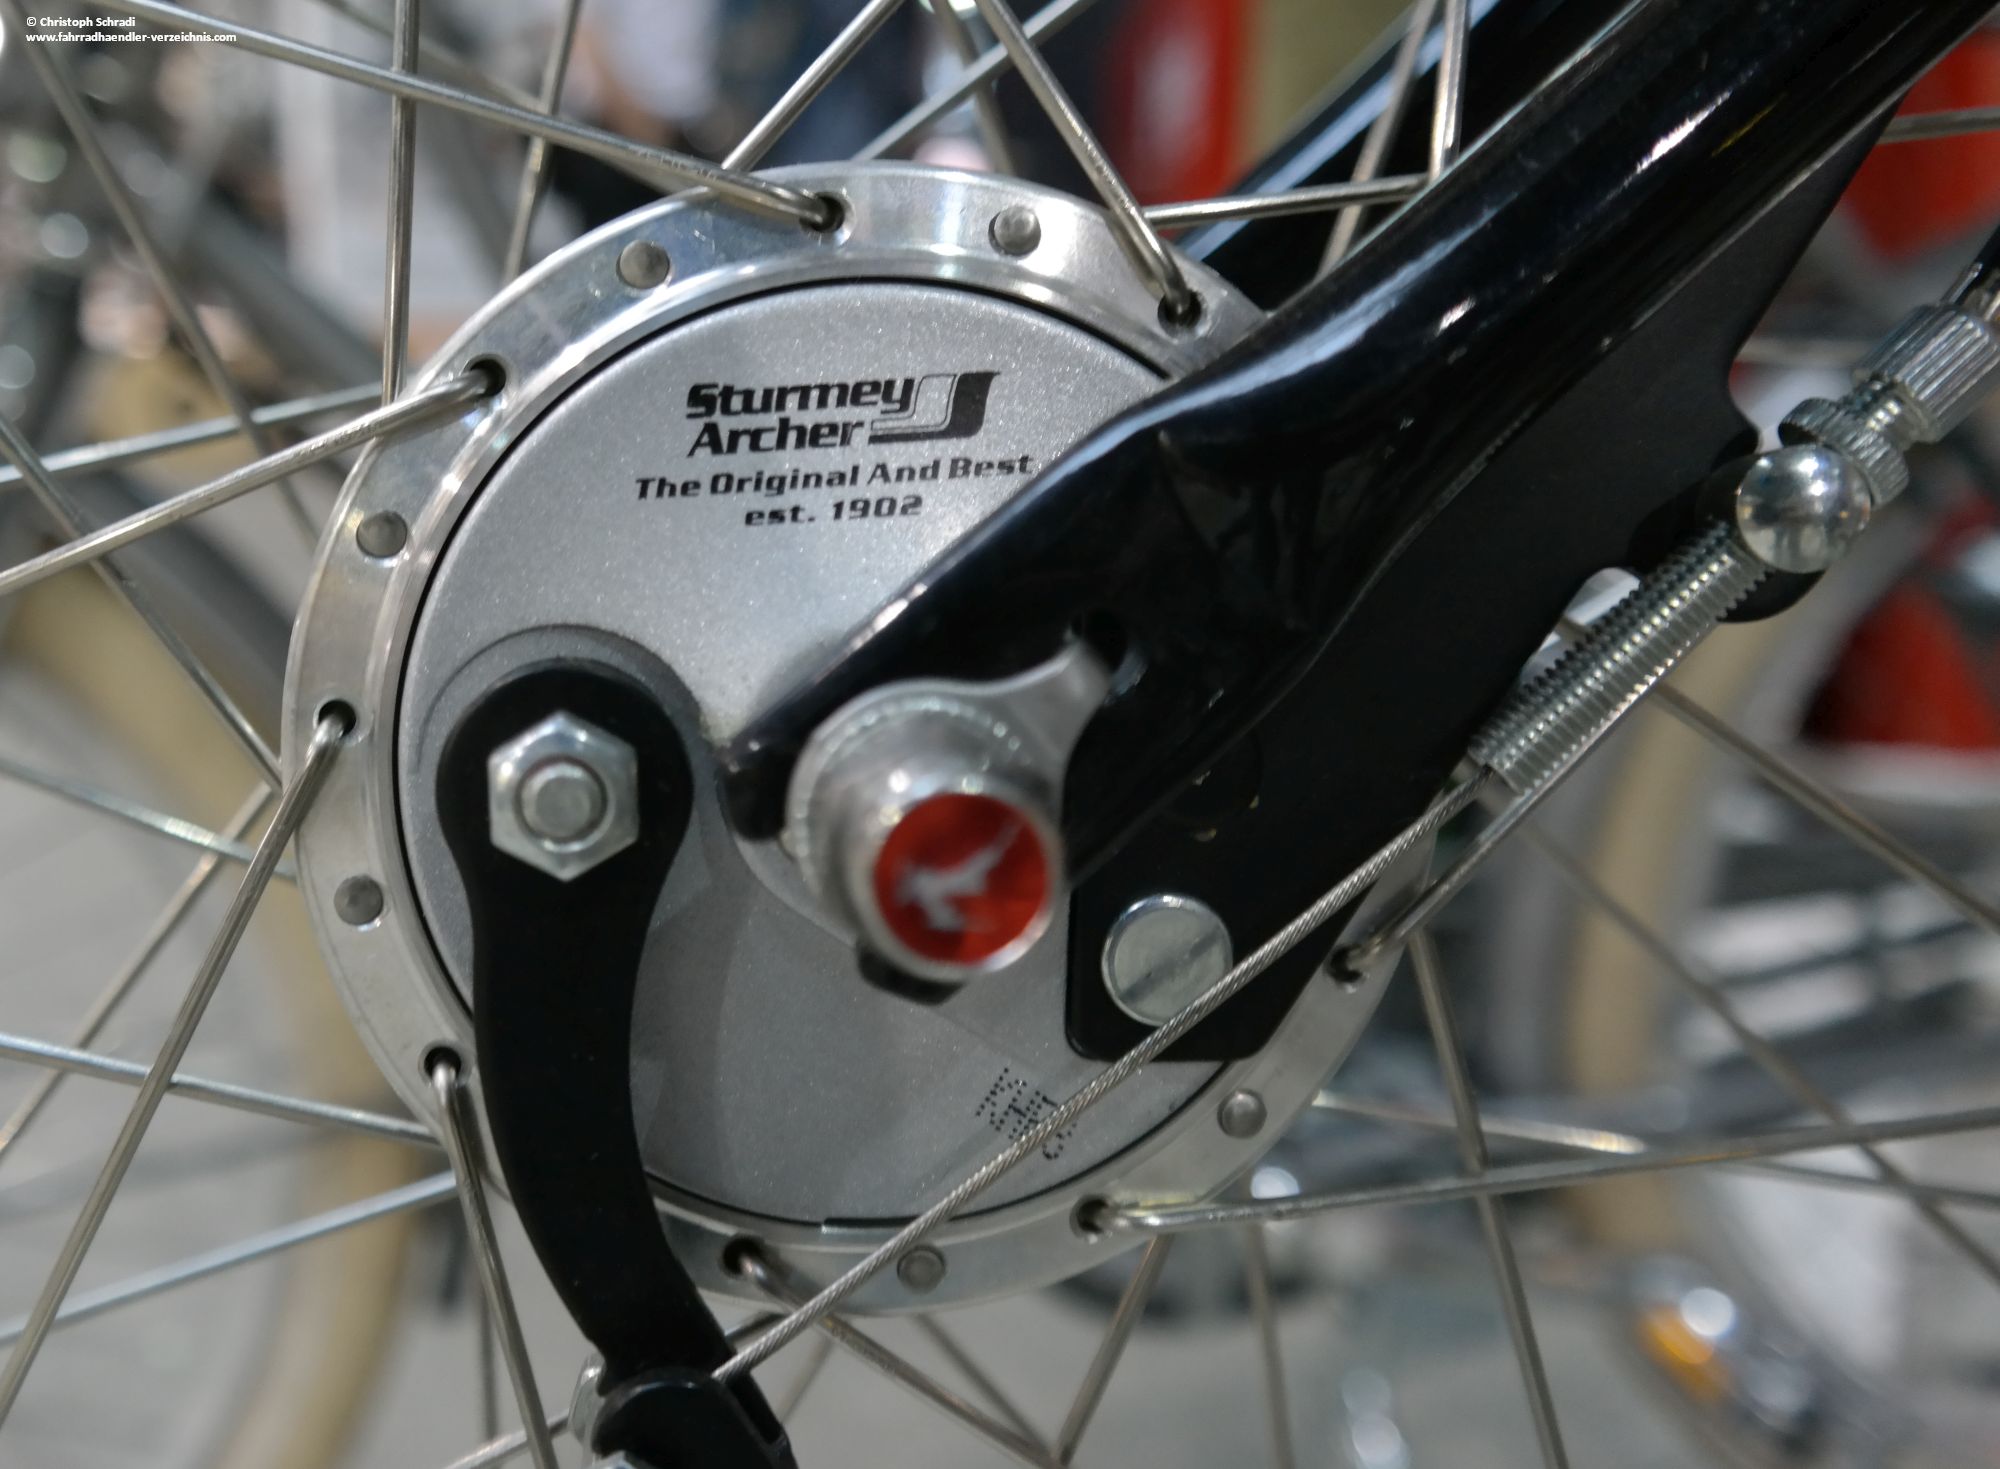 Der ehemalige Hersteller Sturmey-Archer aus England gehört heute zu dem taiwanesischen Unternehmen SunRace - bekannt für Fahrradnaben und Ritzelpakete